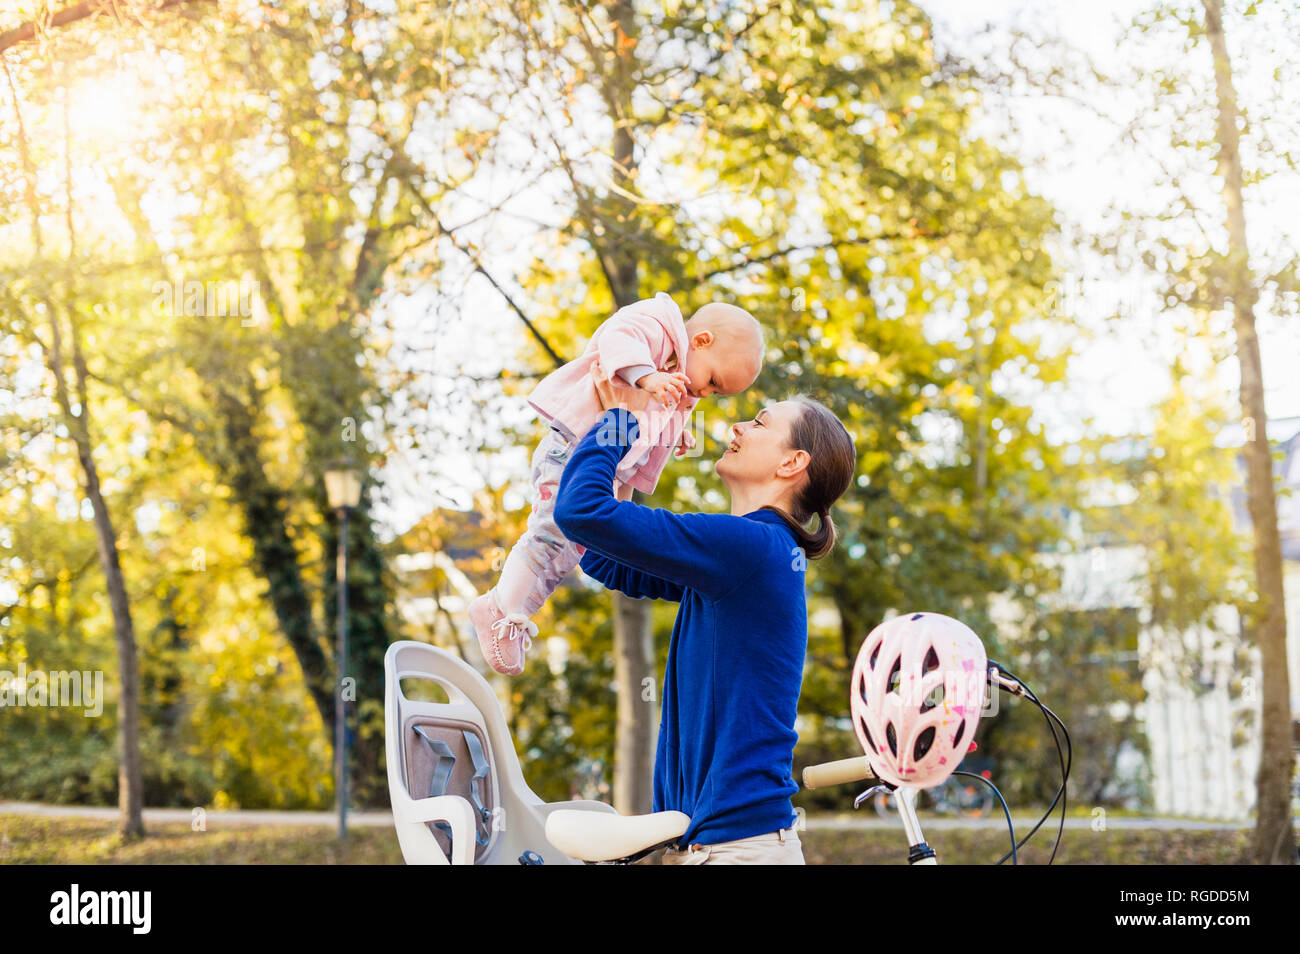 Mère et fille riding bicycle, levage de bébé siège pour enfants Banque D'Images